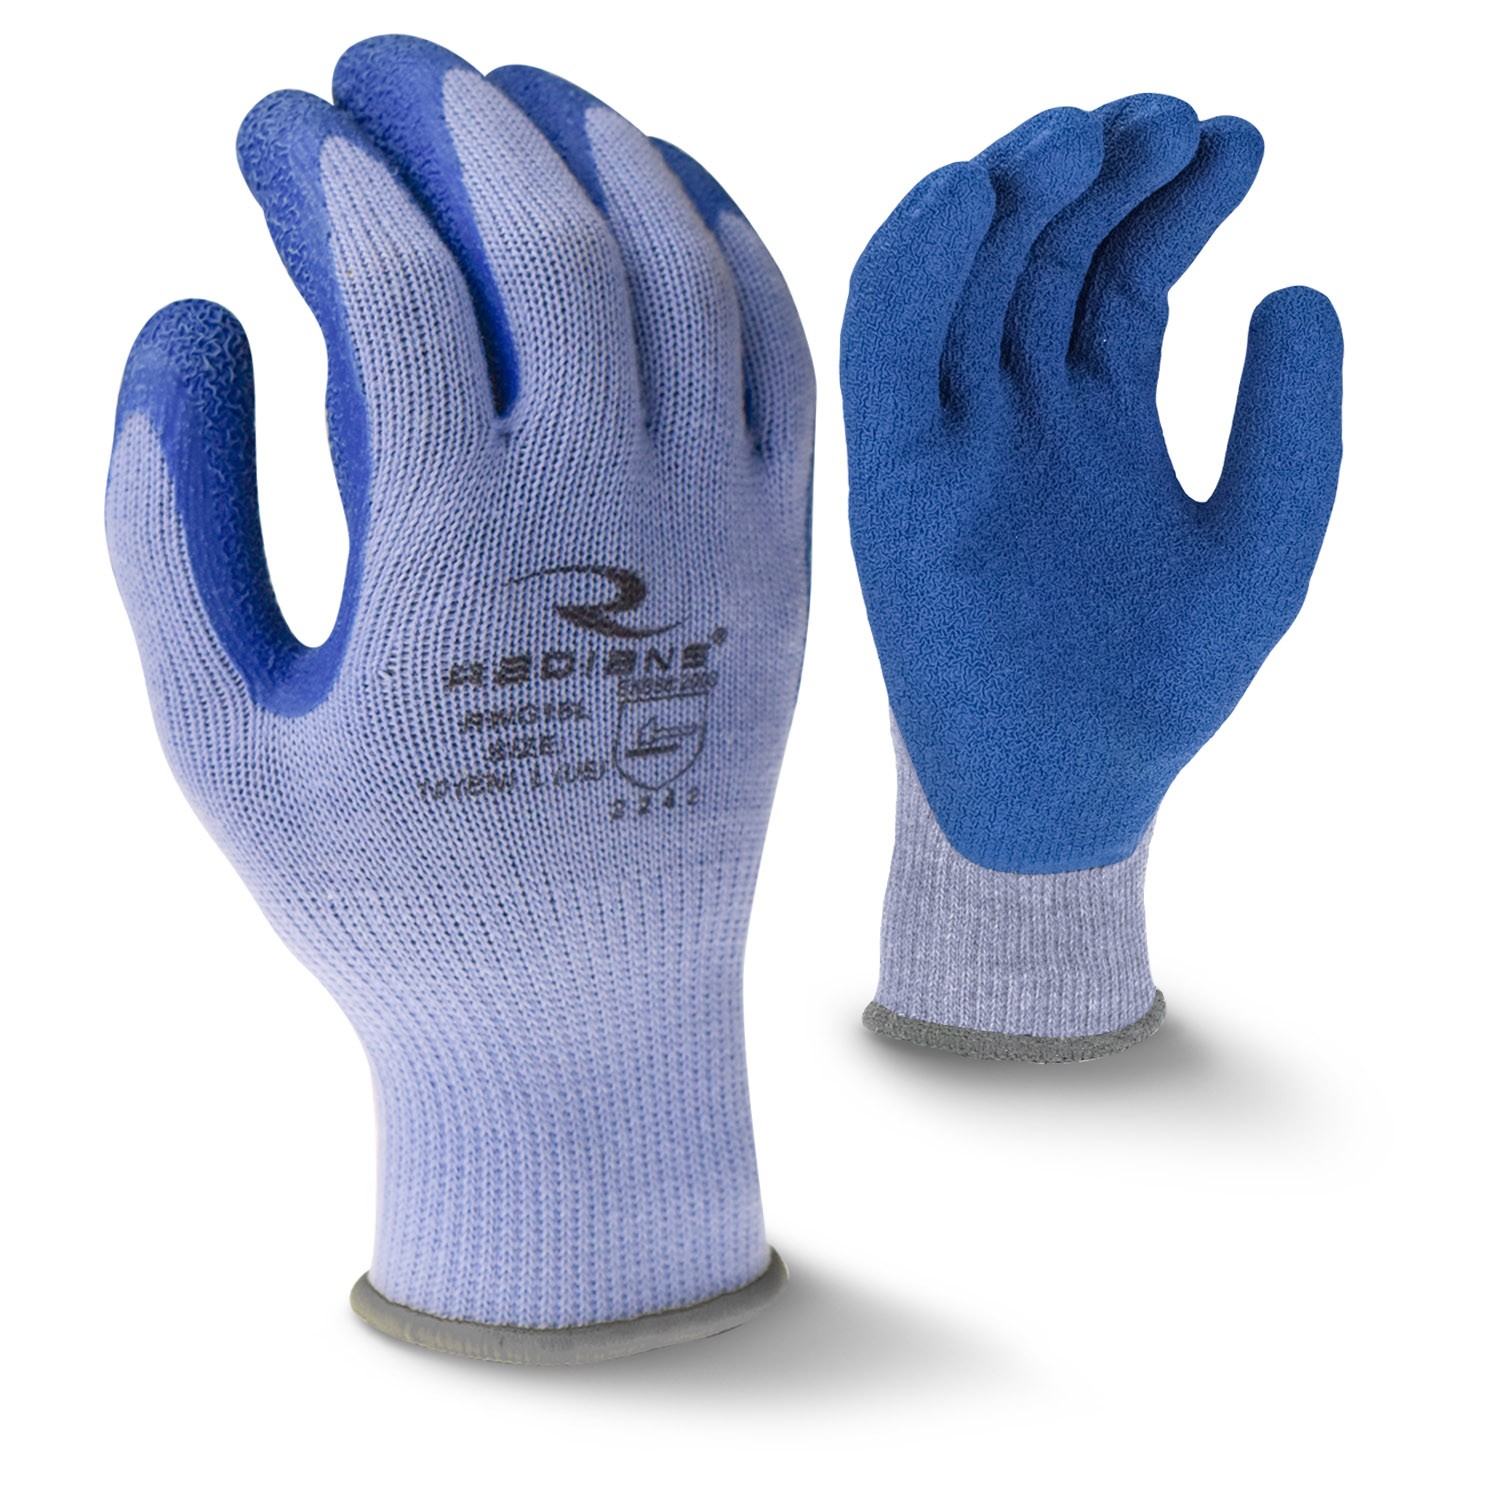 Radians Crinkle Latex Palm Coated Glove (#RWG16)